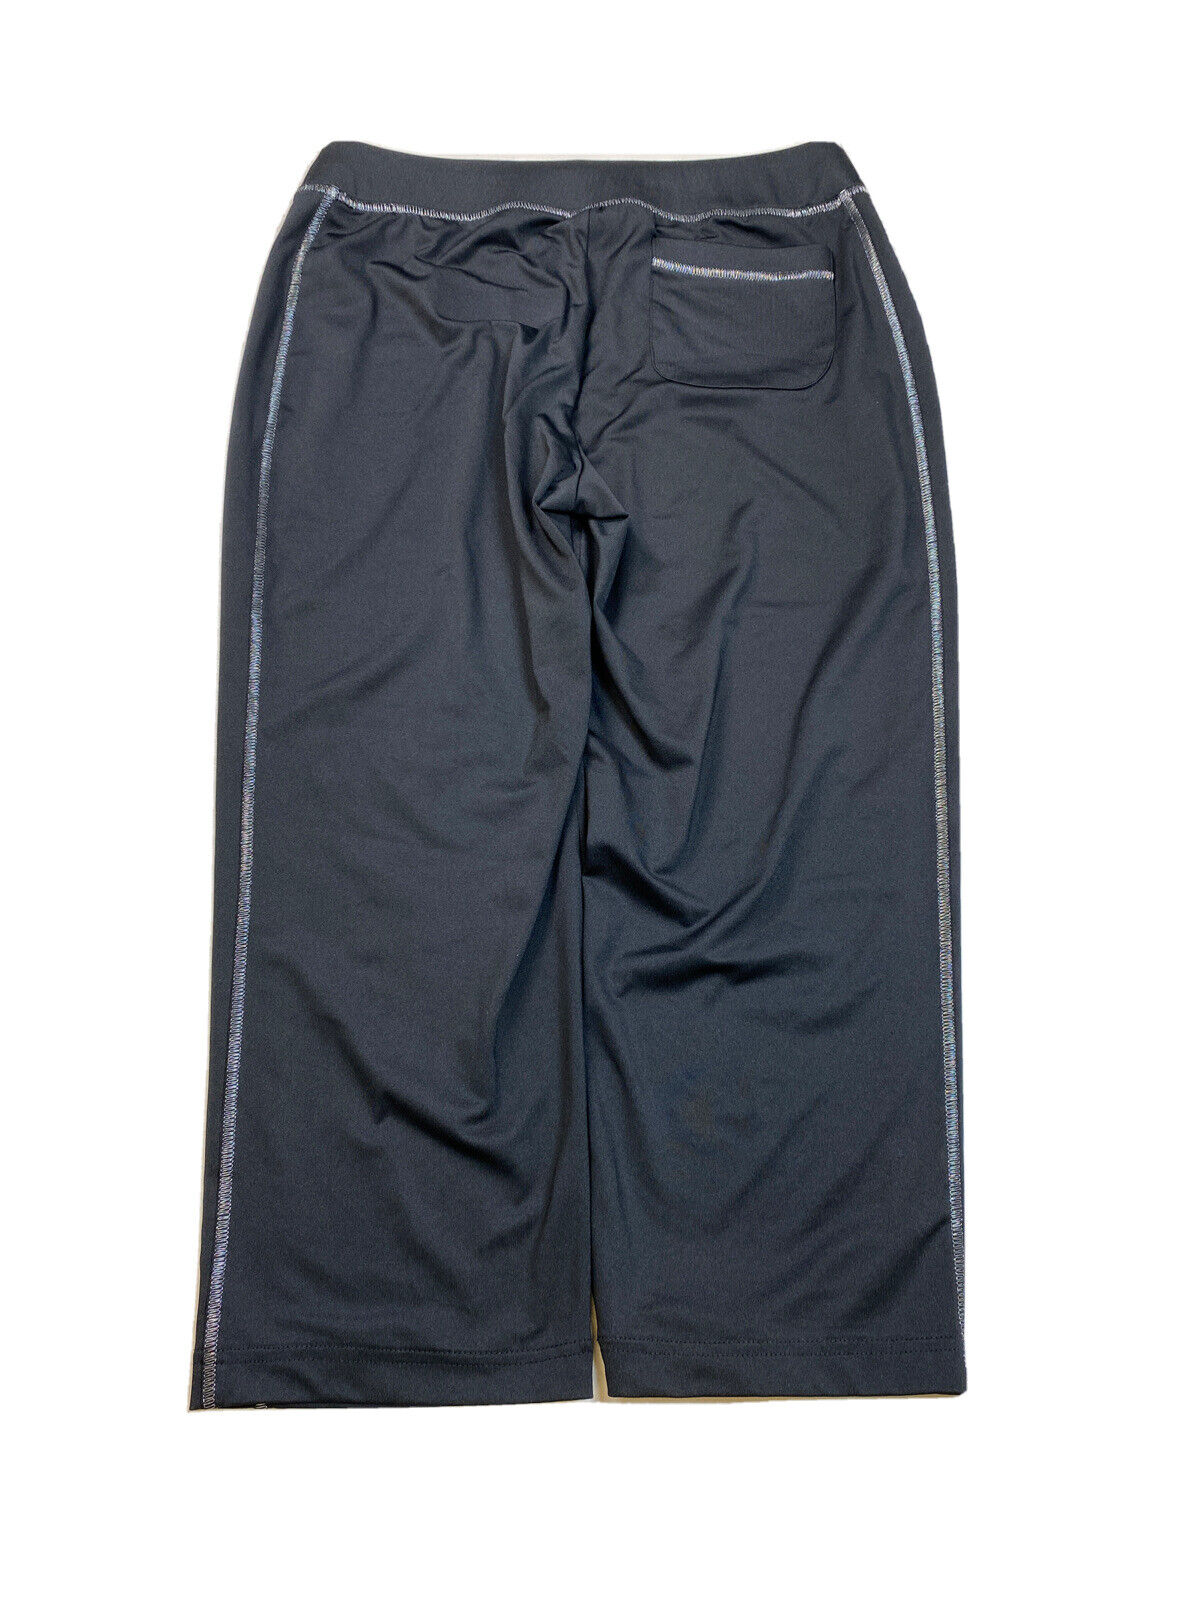 Zenergy by Chico's Pantalones deportivos de pierna recta para mujer, color negro, 0 US S